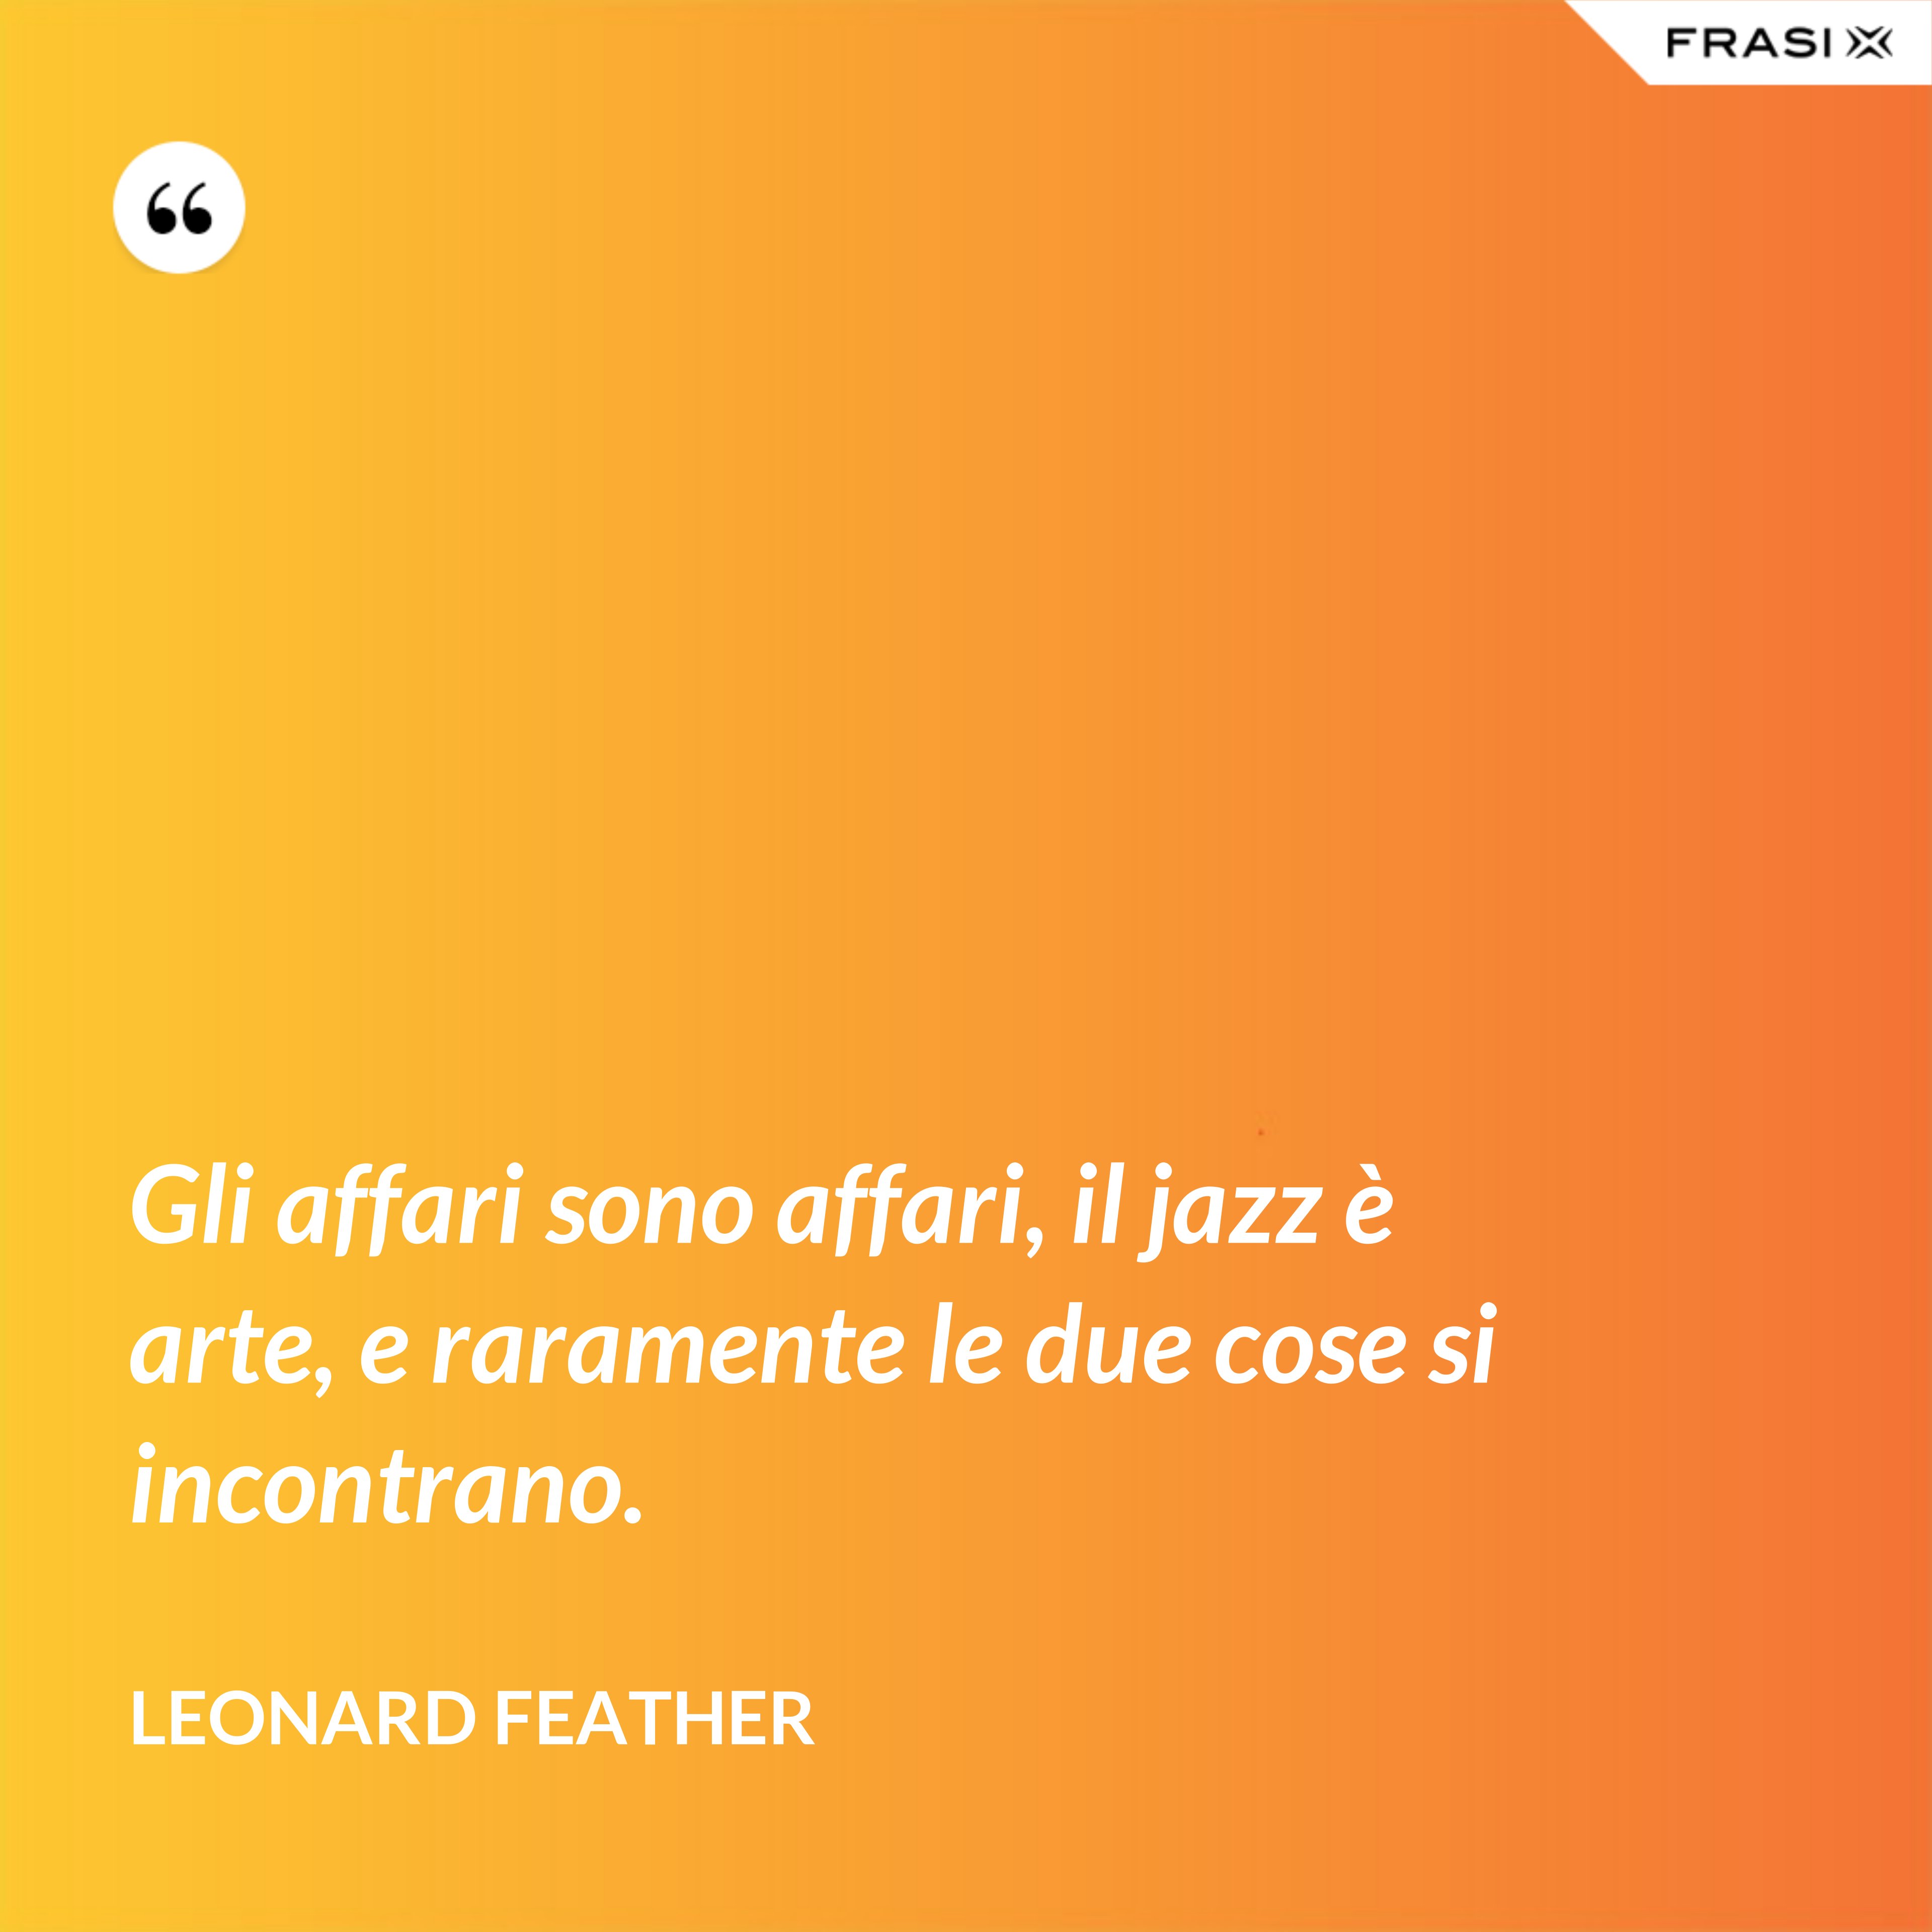 Gli affari sono affari, il jazz è arte, e raramente le due cose si incontrano. - Leonard Feather